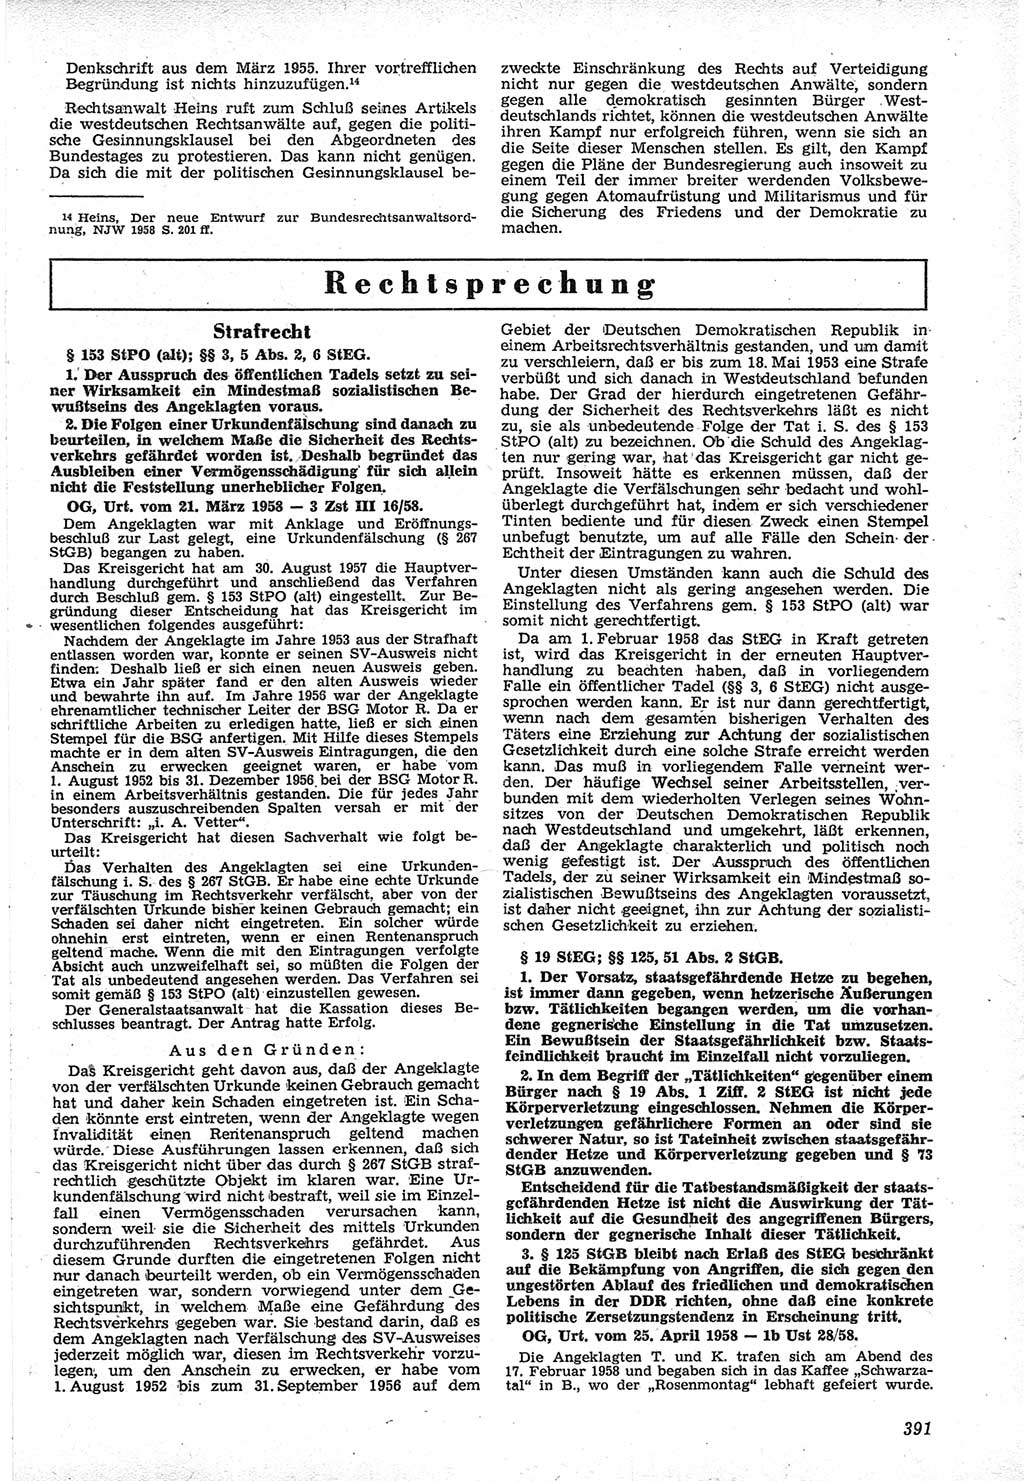 Neue Justiz (NJ), Zeitschrift für Recht und Rechtswissenschaft [Deutsche Demokratische Republik (DDR)], 12. Jahrgang 1958, Seite 391 (NJ DDR 1958, S. 391)